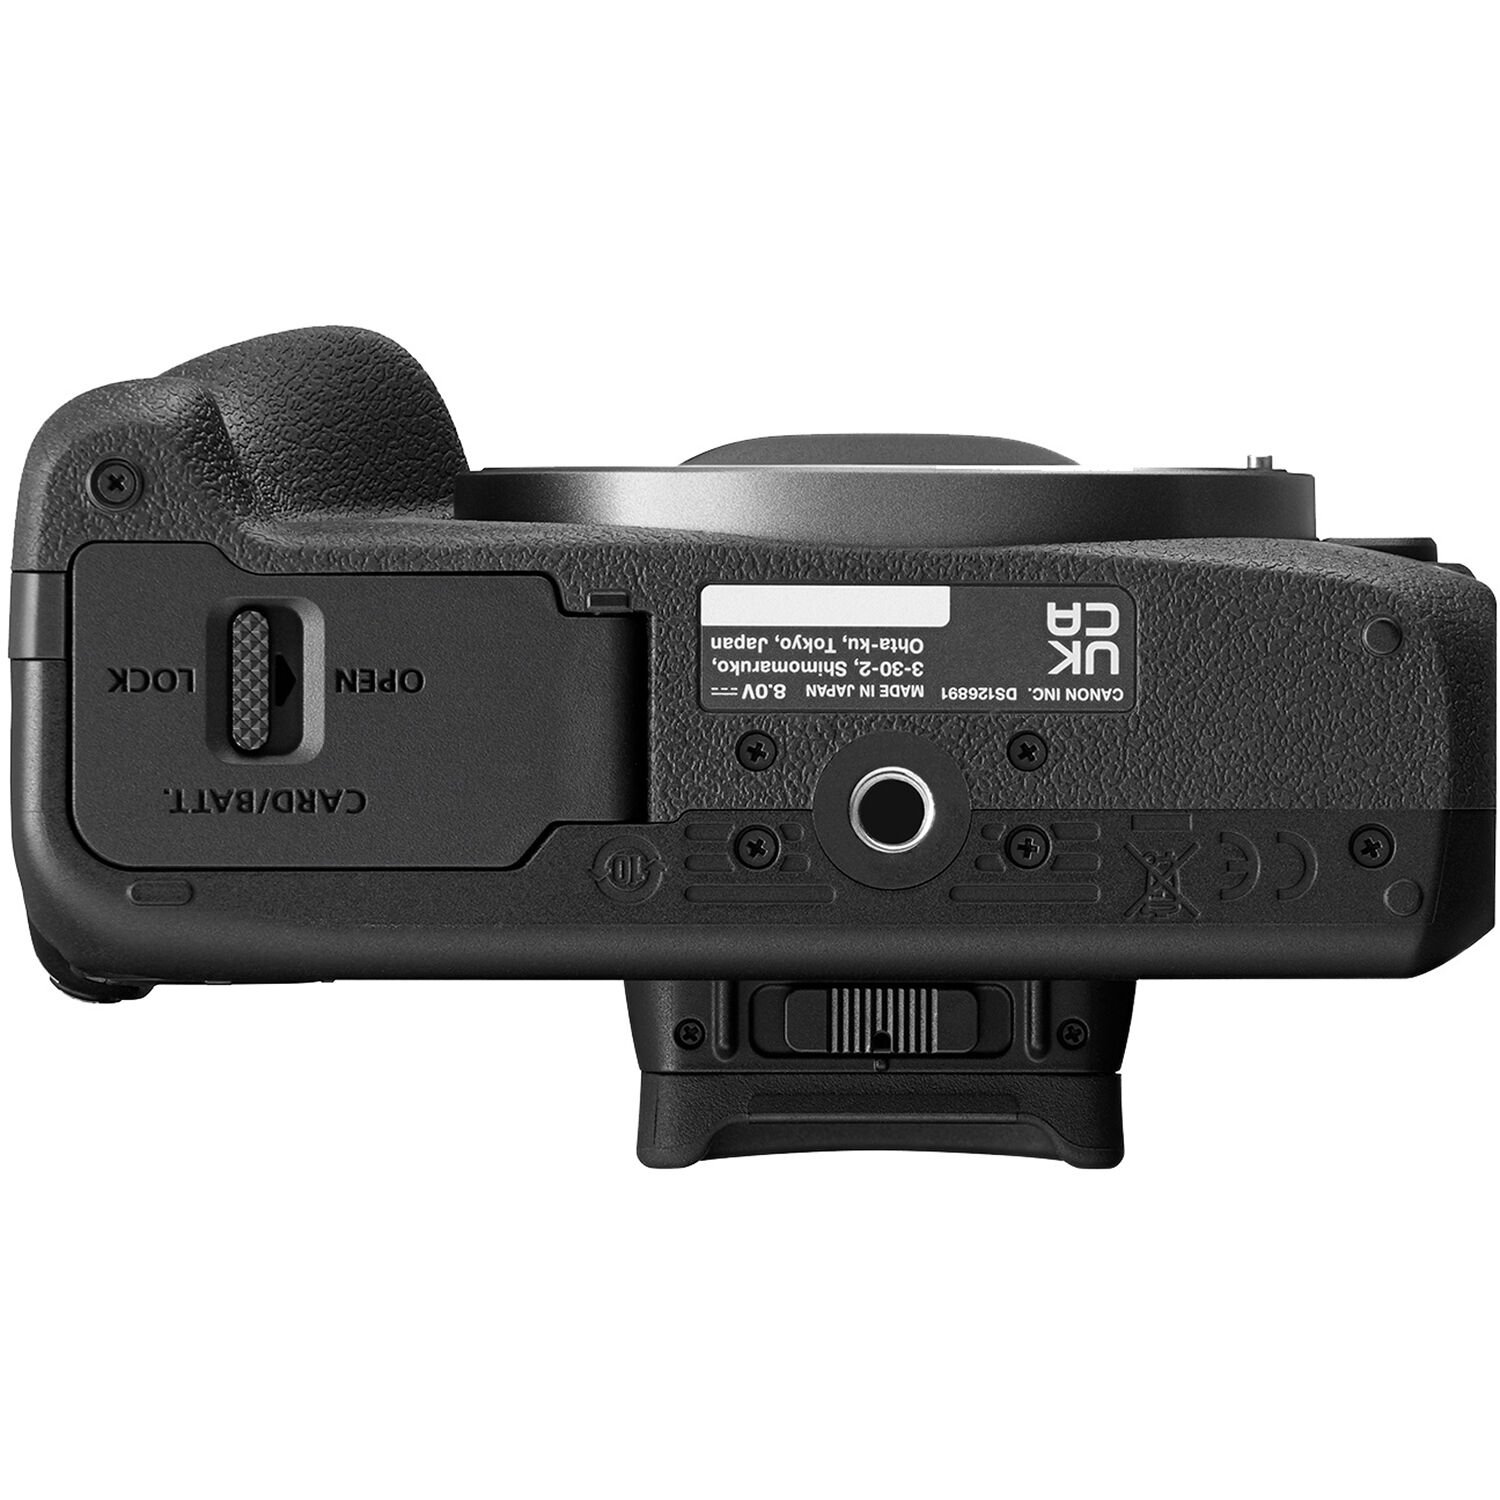 Presentan la cámara Canon EOS R100 y el lente RF 28mm F2.8 STM